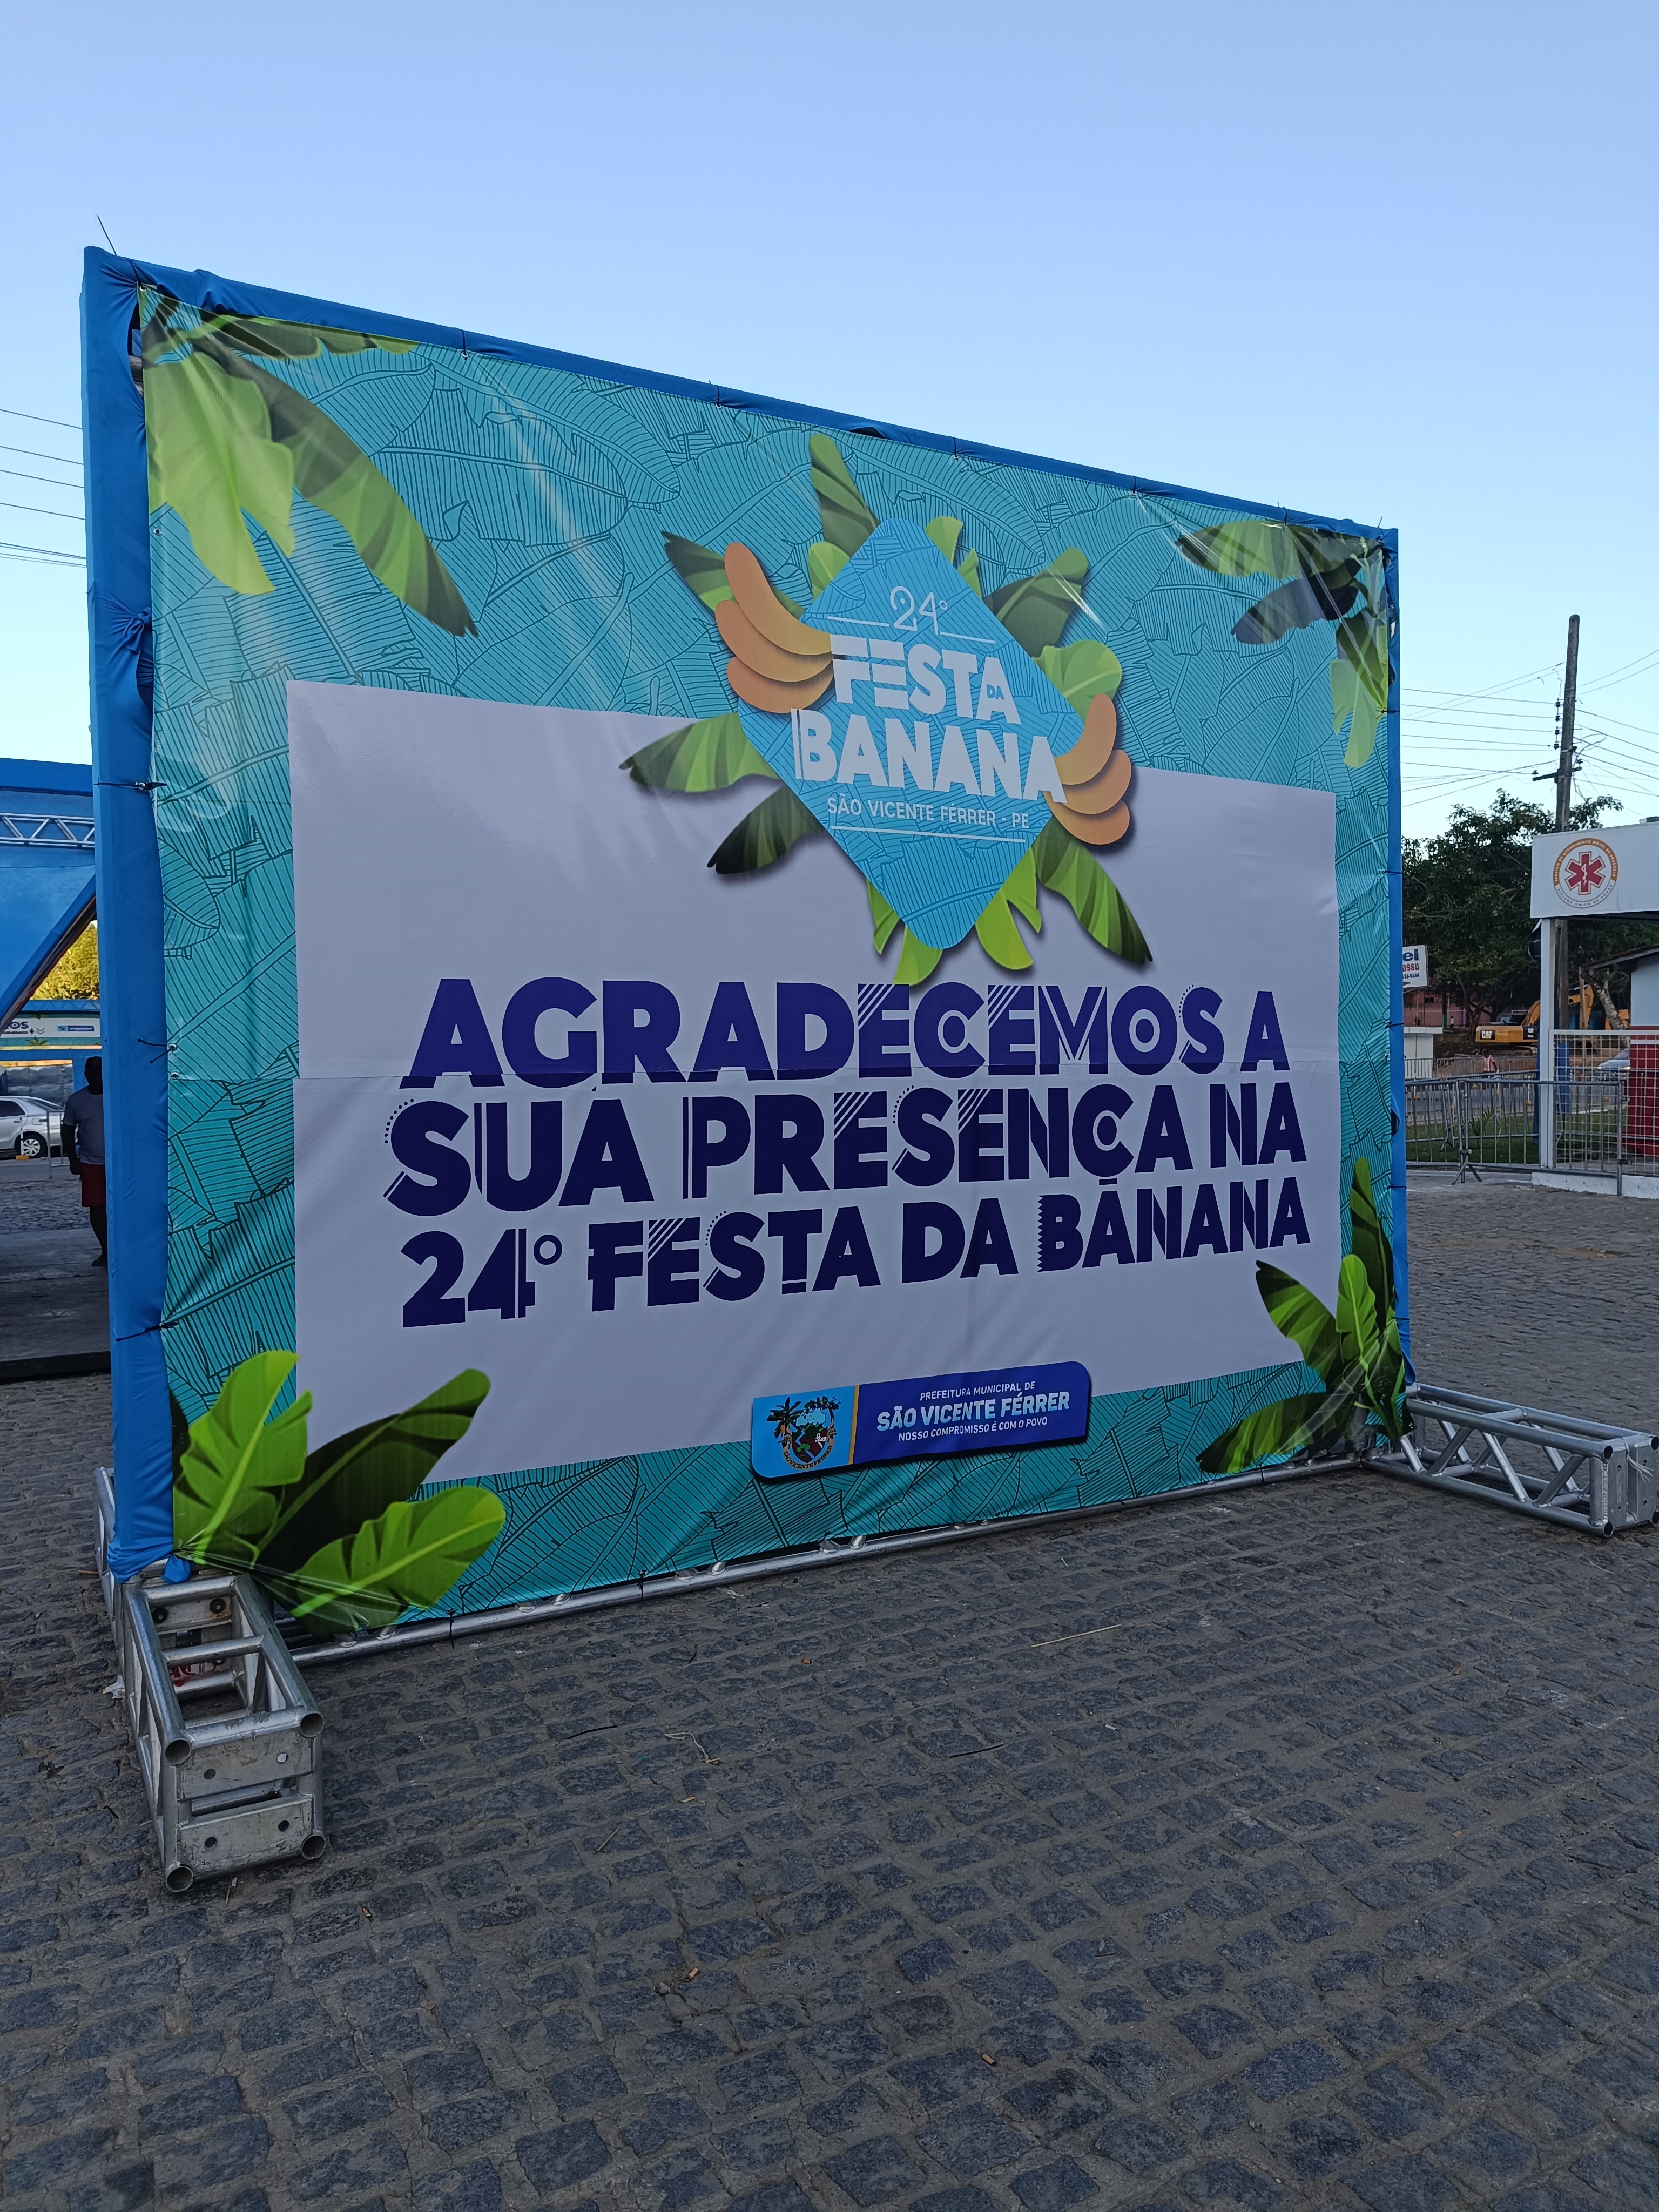 Ceará inicia exportação de jumentos - Região - Diário do Nordeste